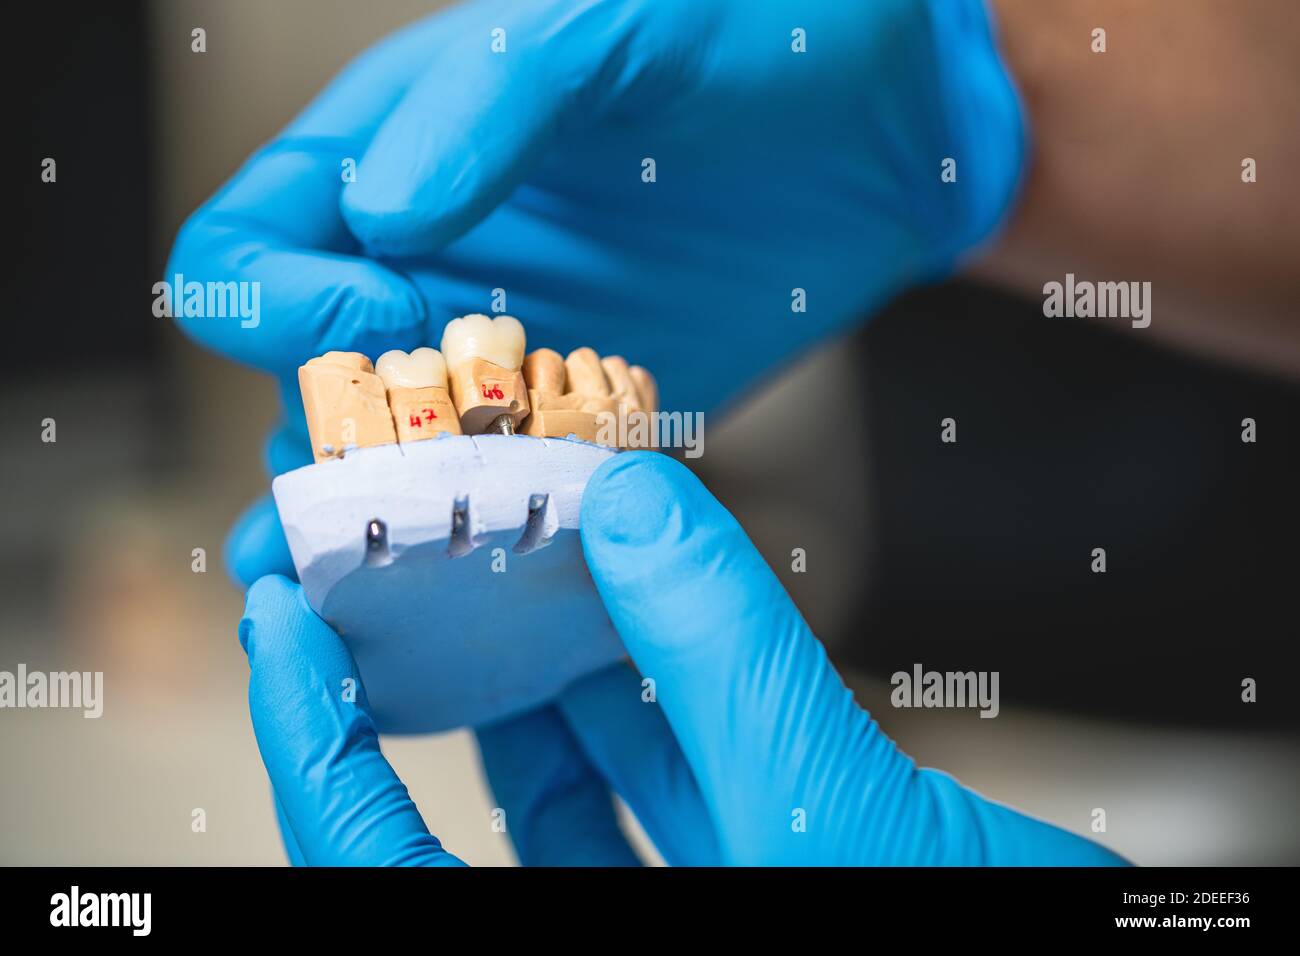 Prothèses dentaires, prothèses dentaires, prothèses. Mains de prothèses tout en travaillant sur la prothèse. Banque D'Images